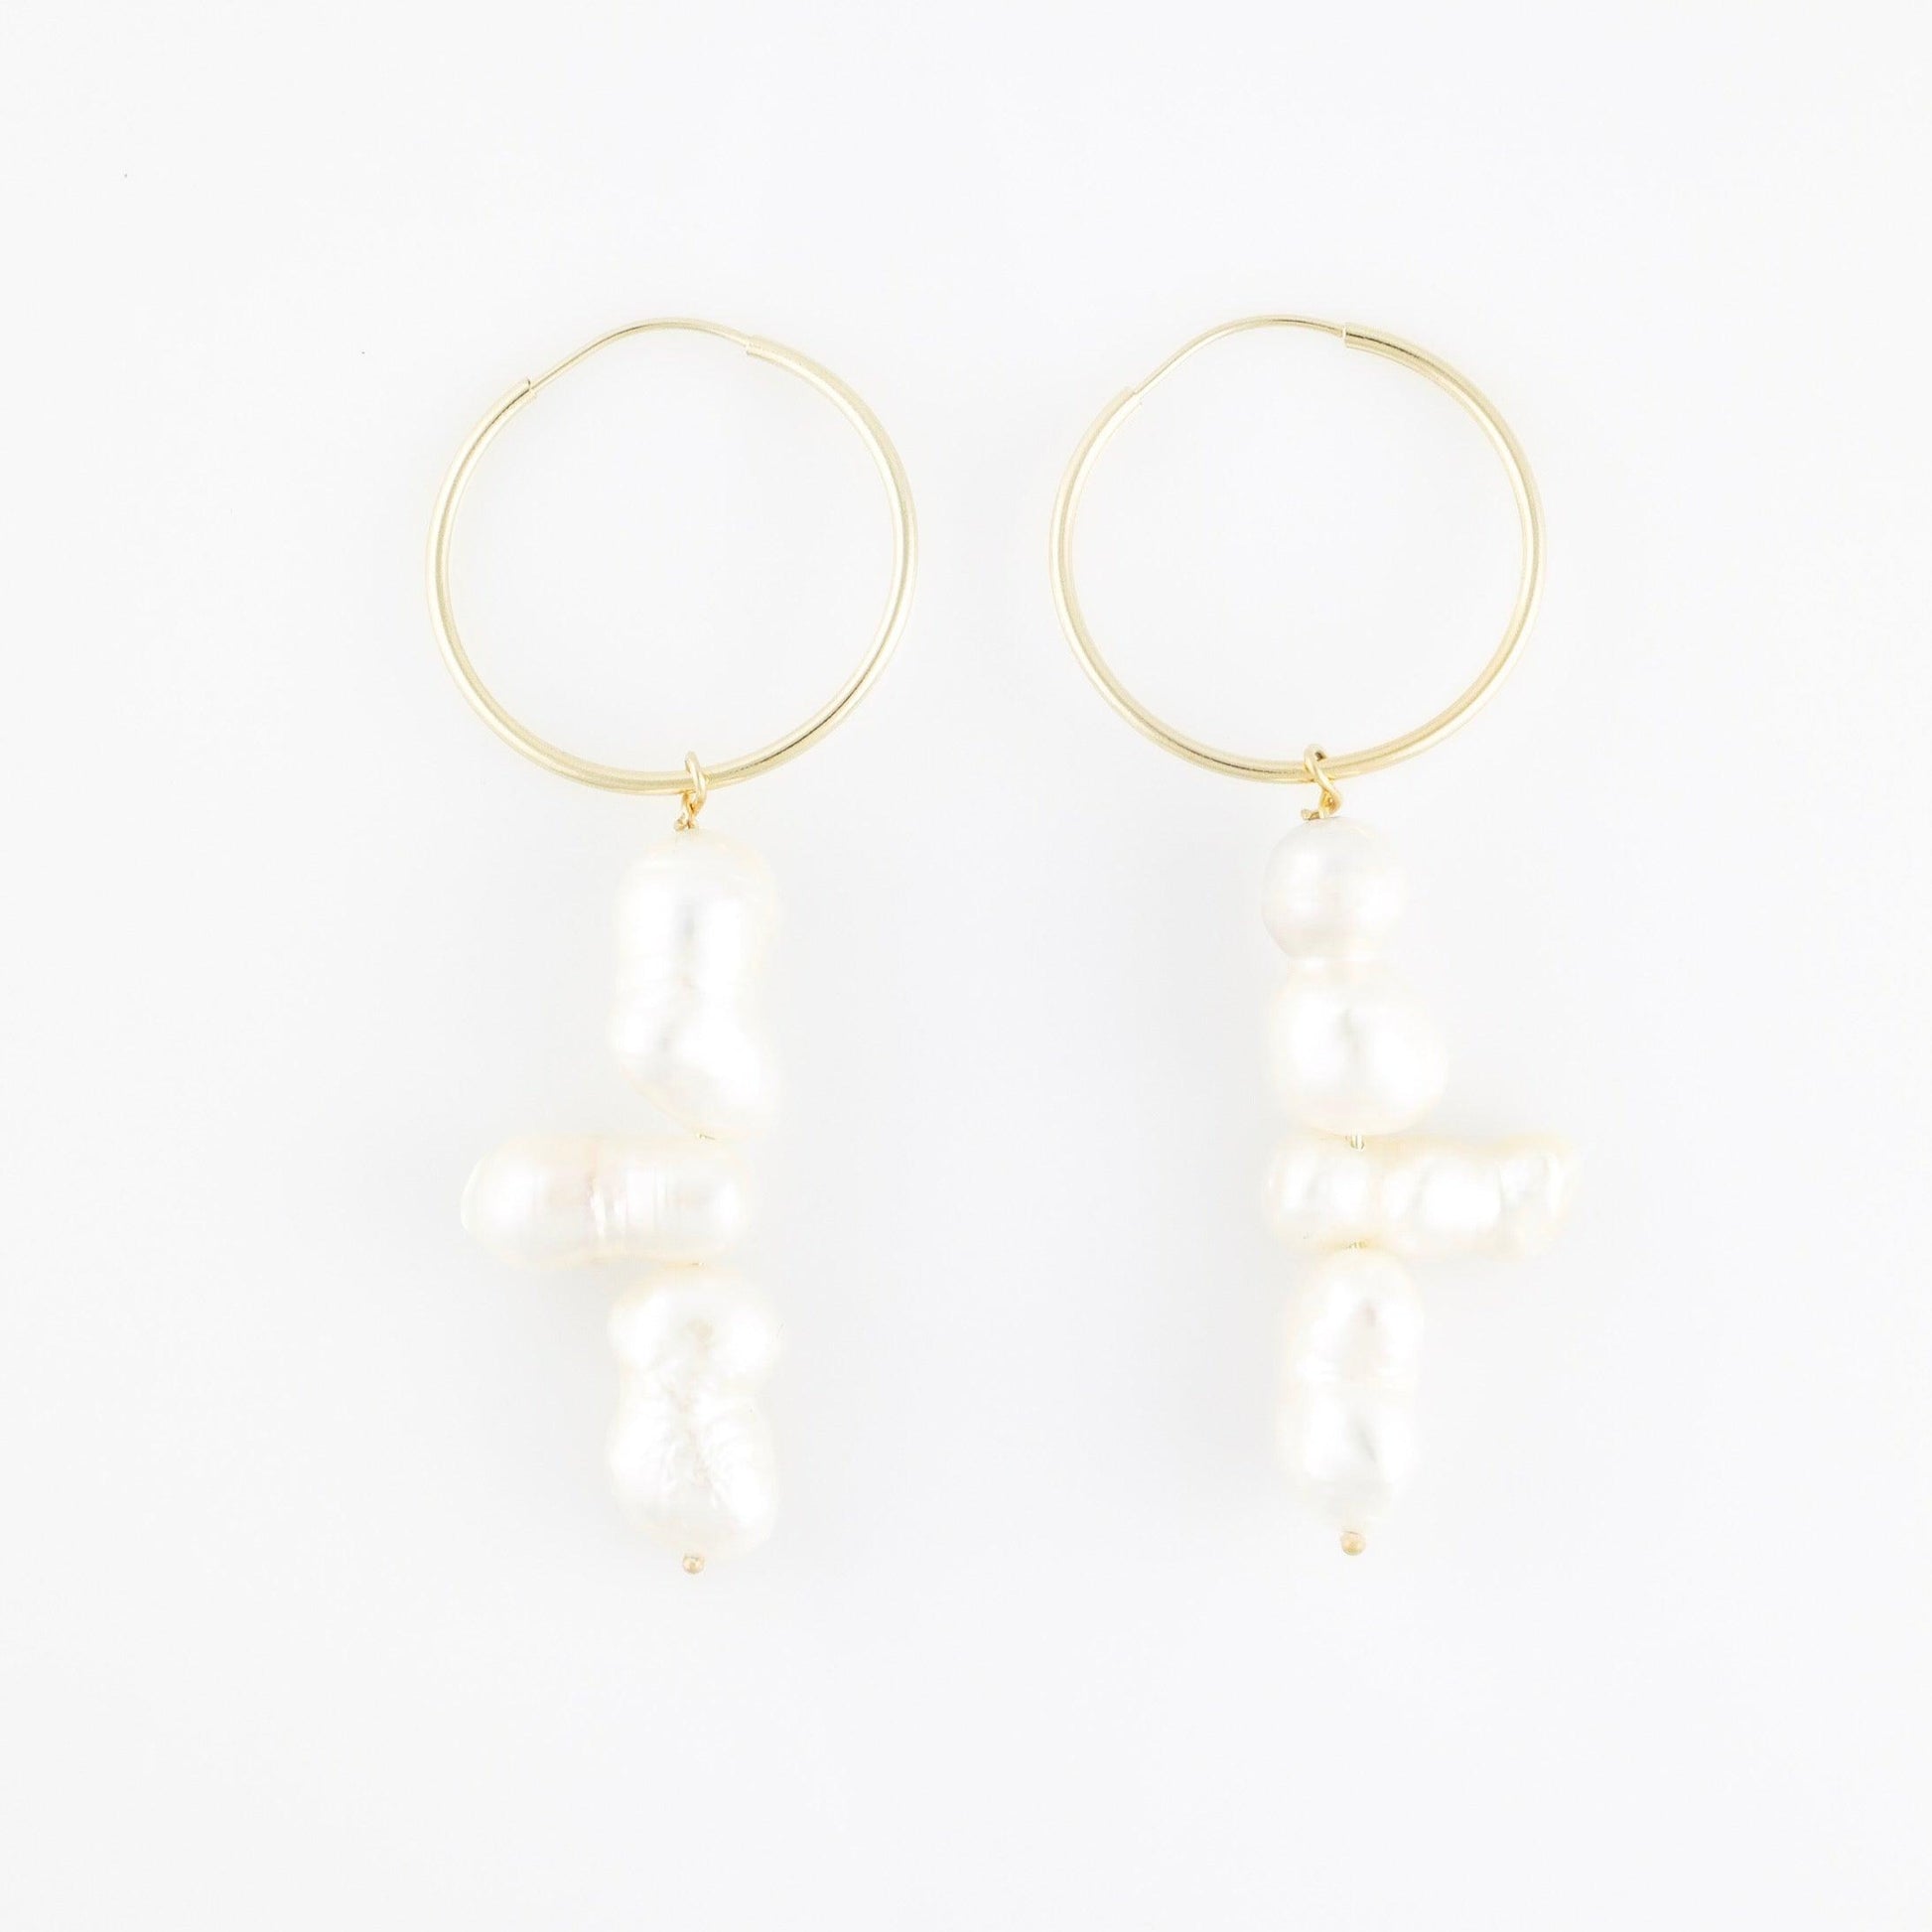 14karat_solid_gold_hoop_earrings_wih_freshwater_pearl_pendants